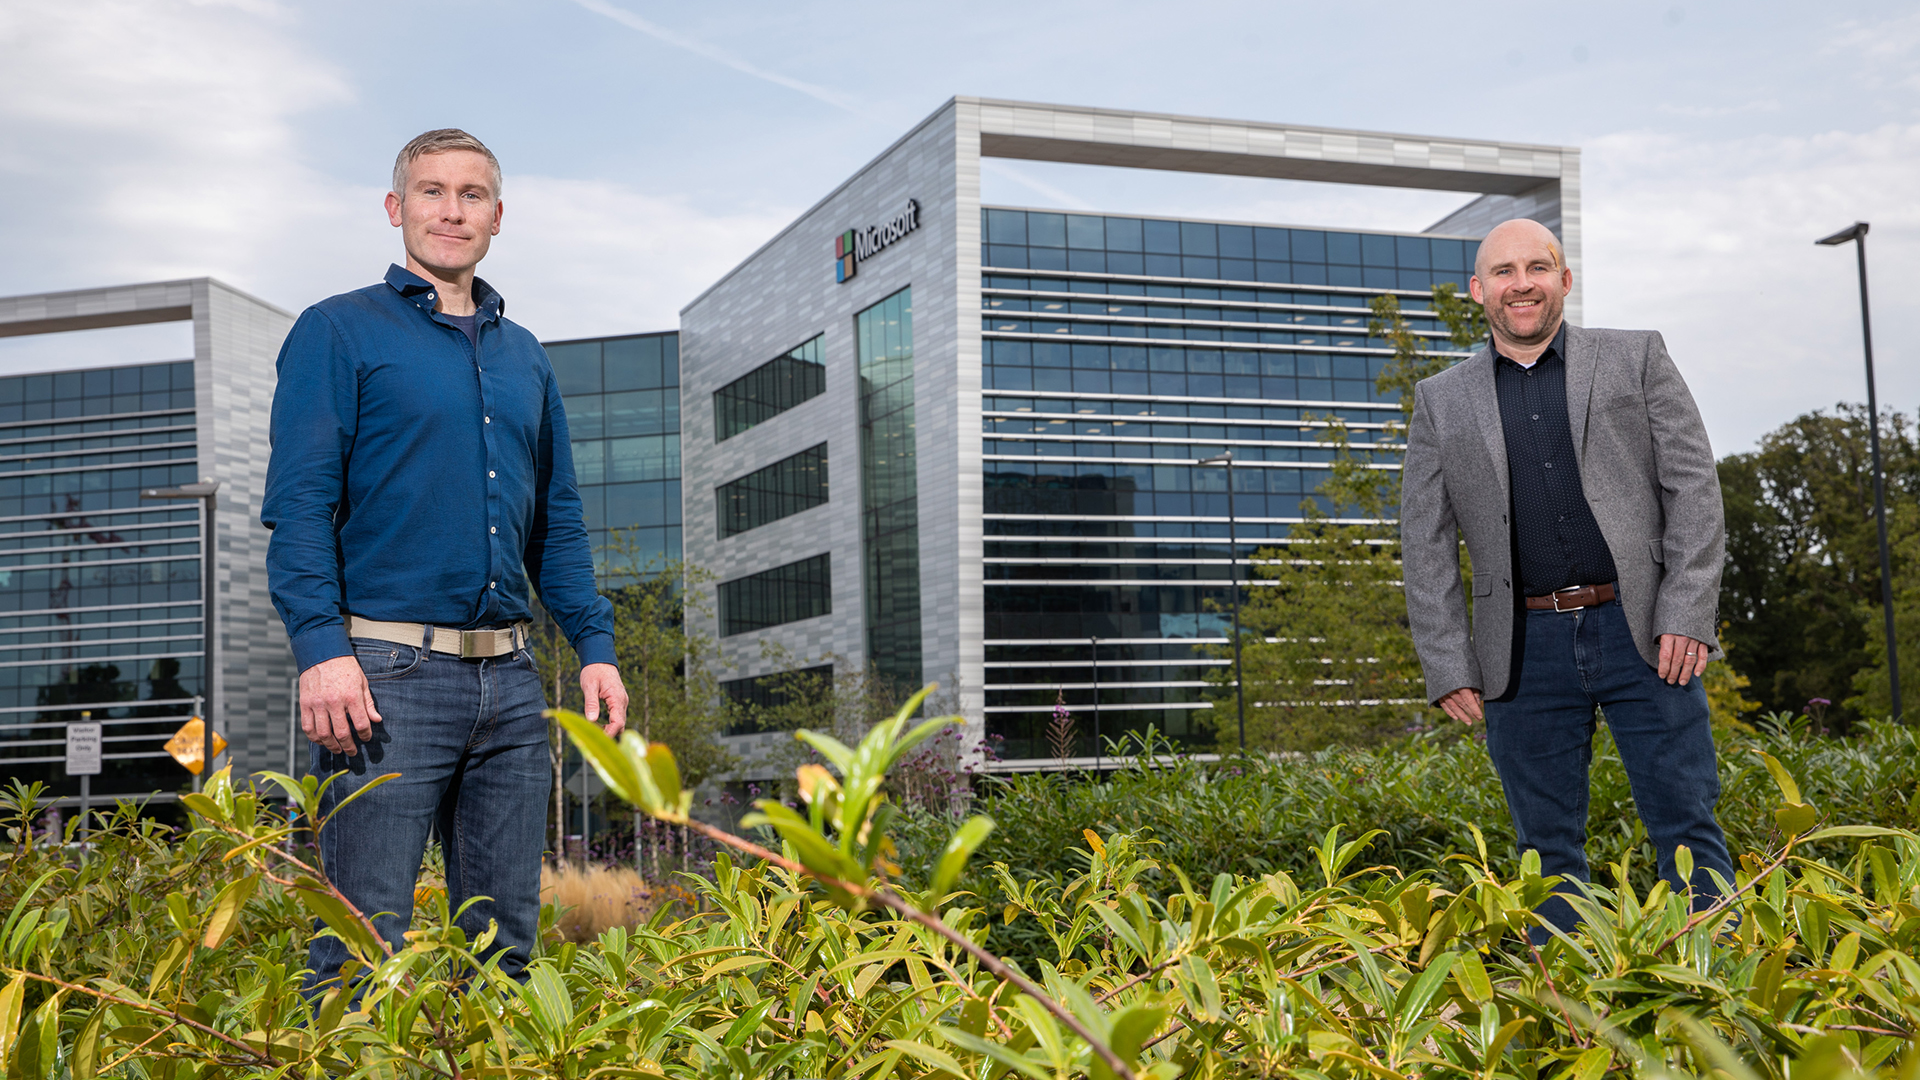 Конор Келли (слева), старший инженер-программист, ведущий специалист по устойчивому развитию Microsoft, и Фергал Ахерн (справа), менеджер по энергетическим решениям для бизнеса и эксперт по возобновляемым источникам энергии компании SSE Airtricity, стоят возле офиса Microsoft в Дублине (Ирландия). Эти две компании объединили свои усилия в рамках проекта, чтобы продемонстрировать целесообразность заключения соглашений о закупке распределенной энергии. Фото Naoise Culhane.